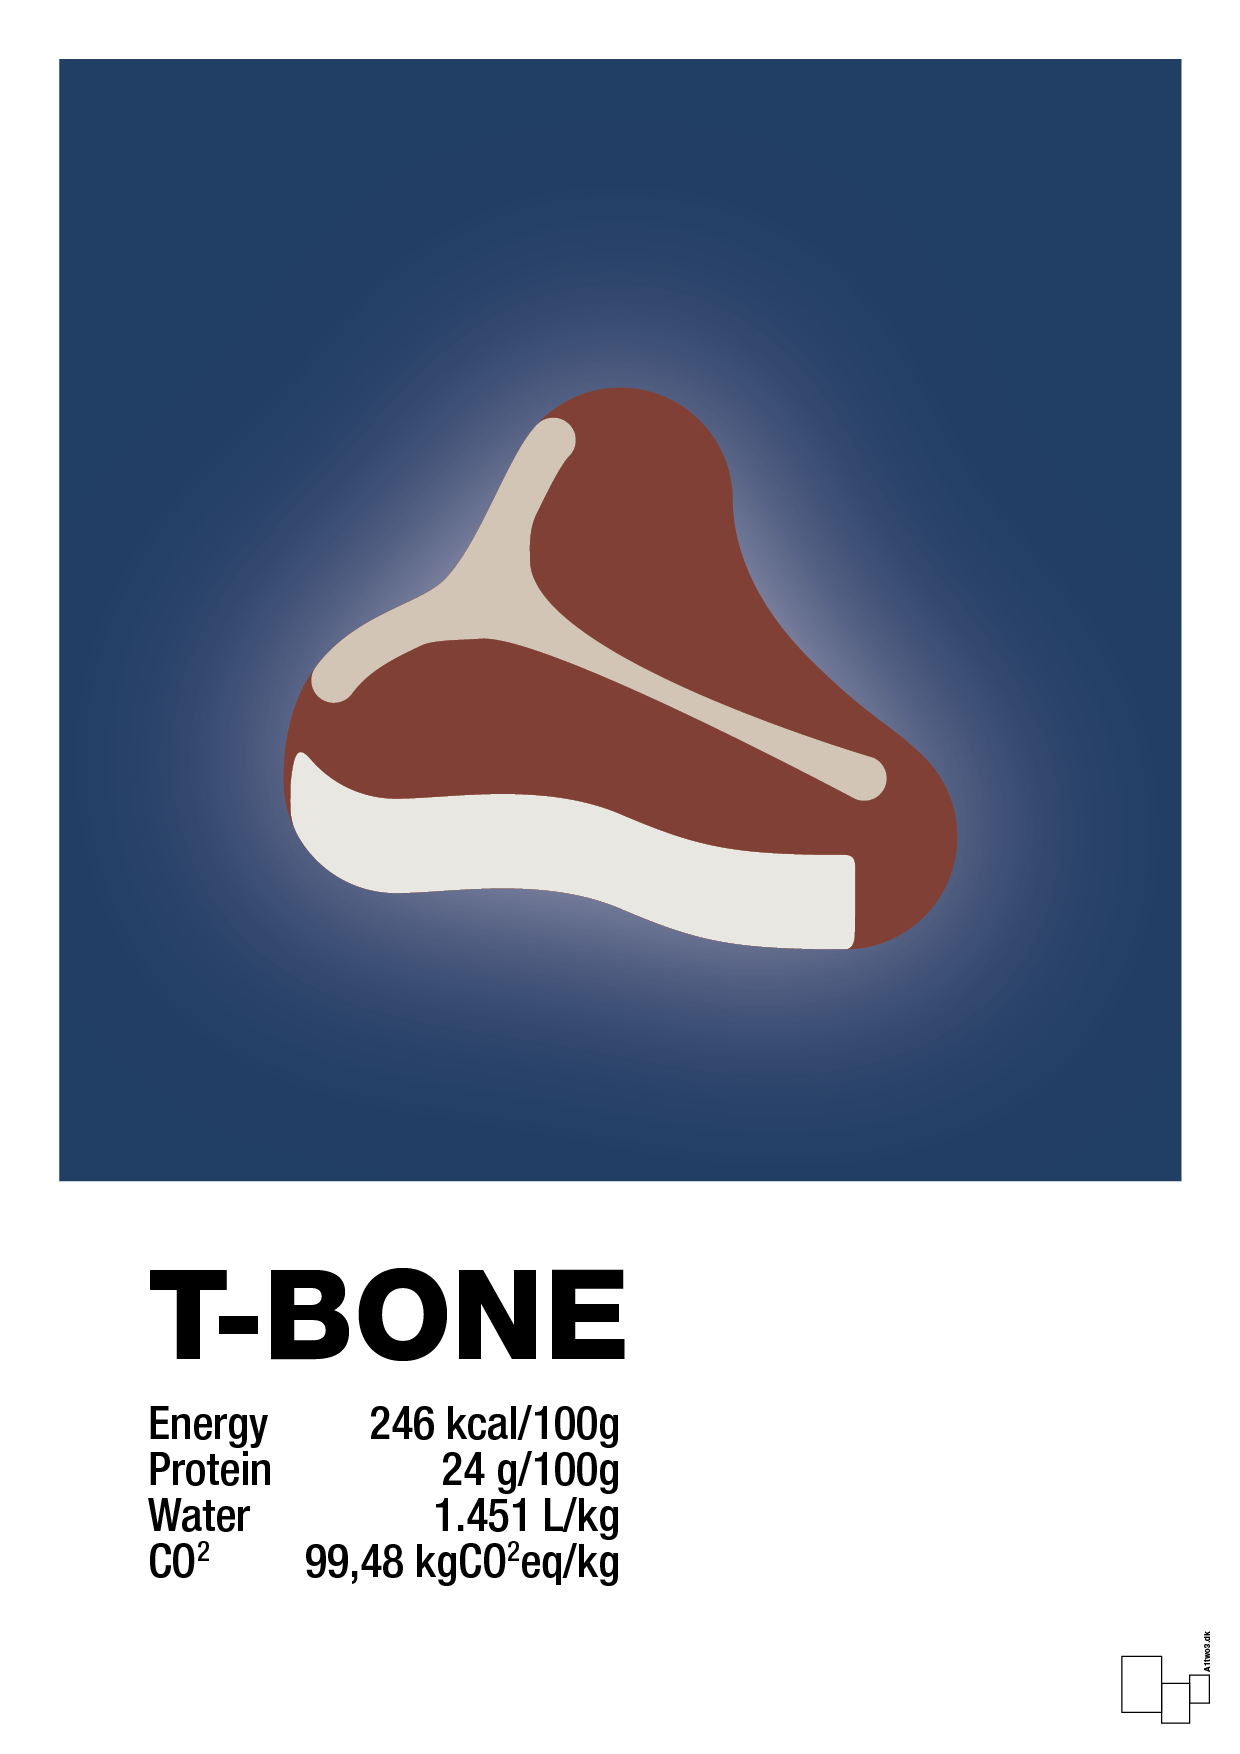 t-bone nutrition og miljø - Plakat med Mad & Drikke i Lapis Blue